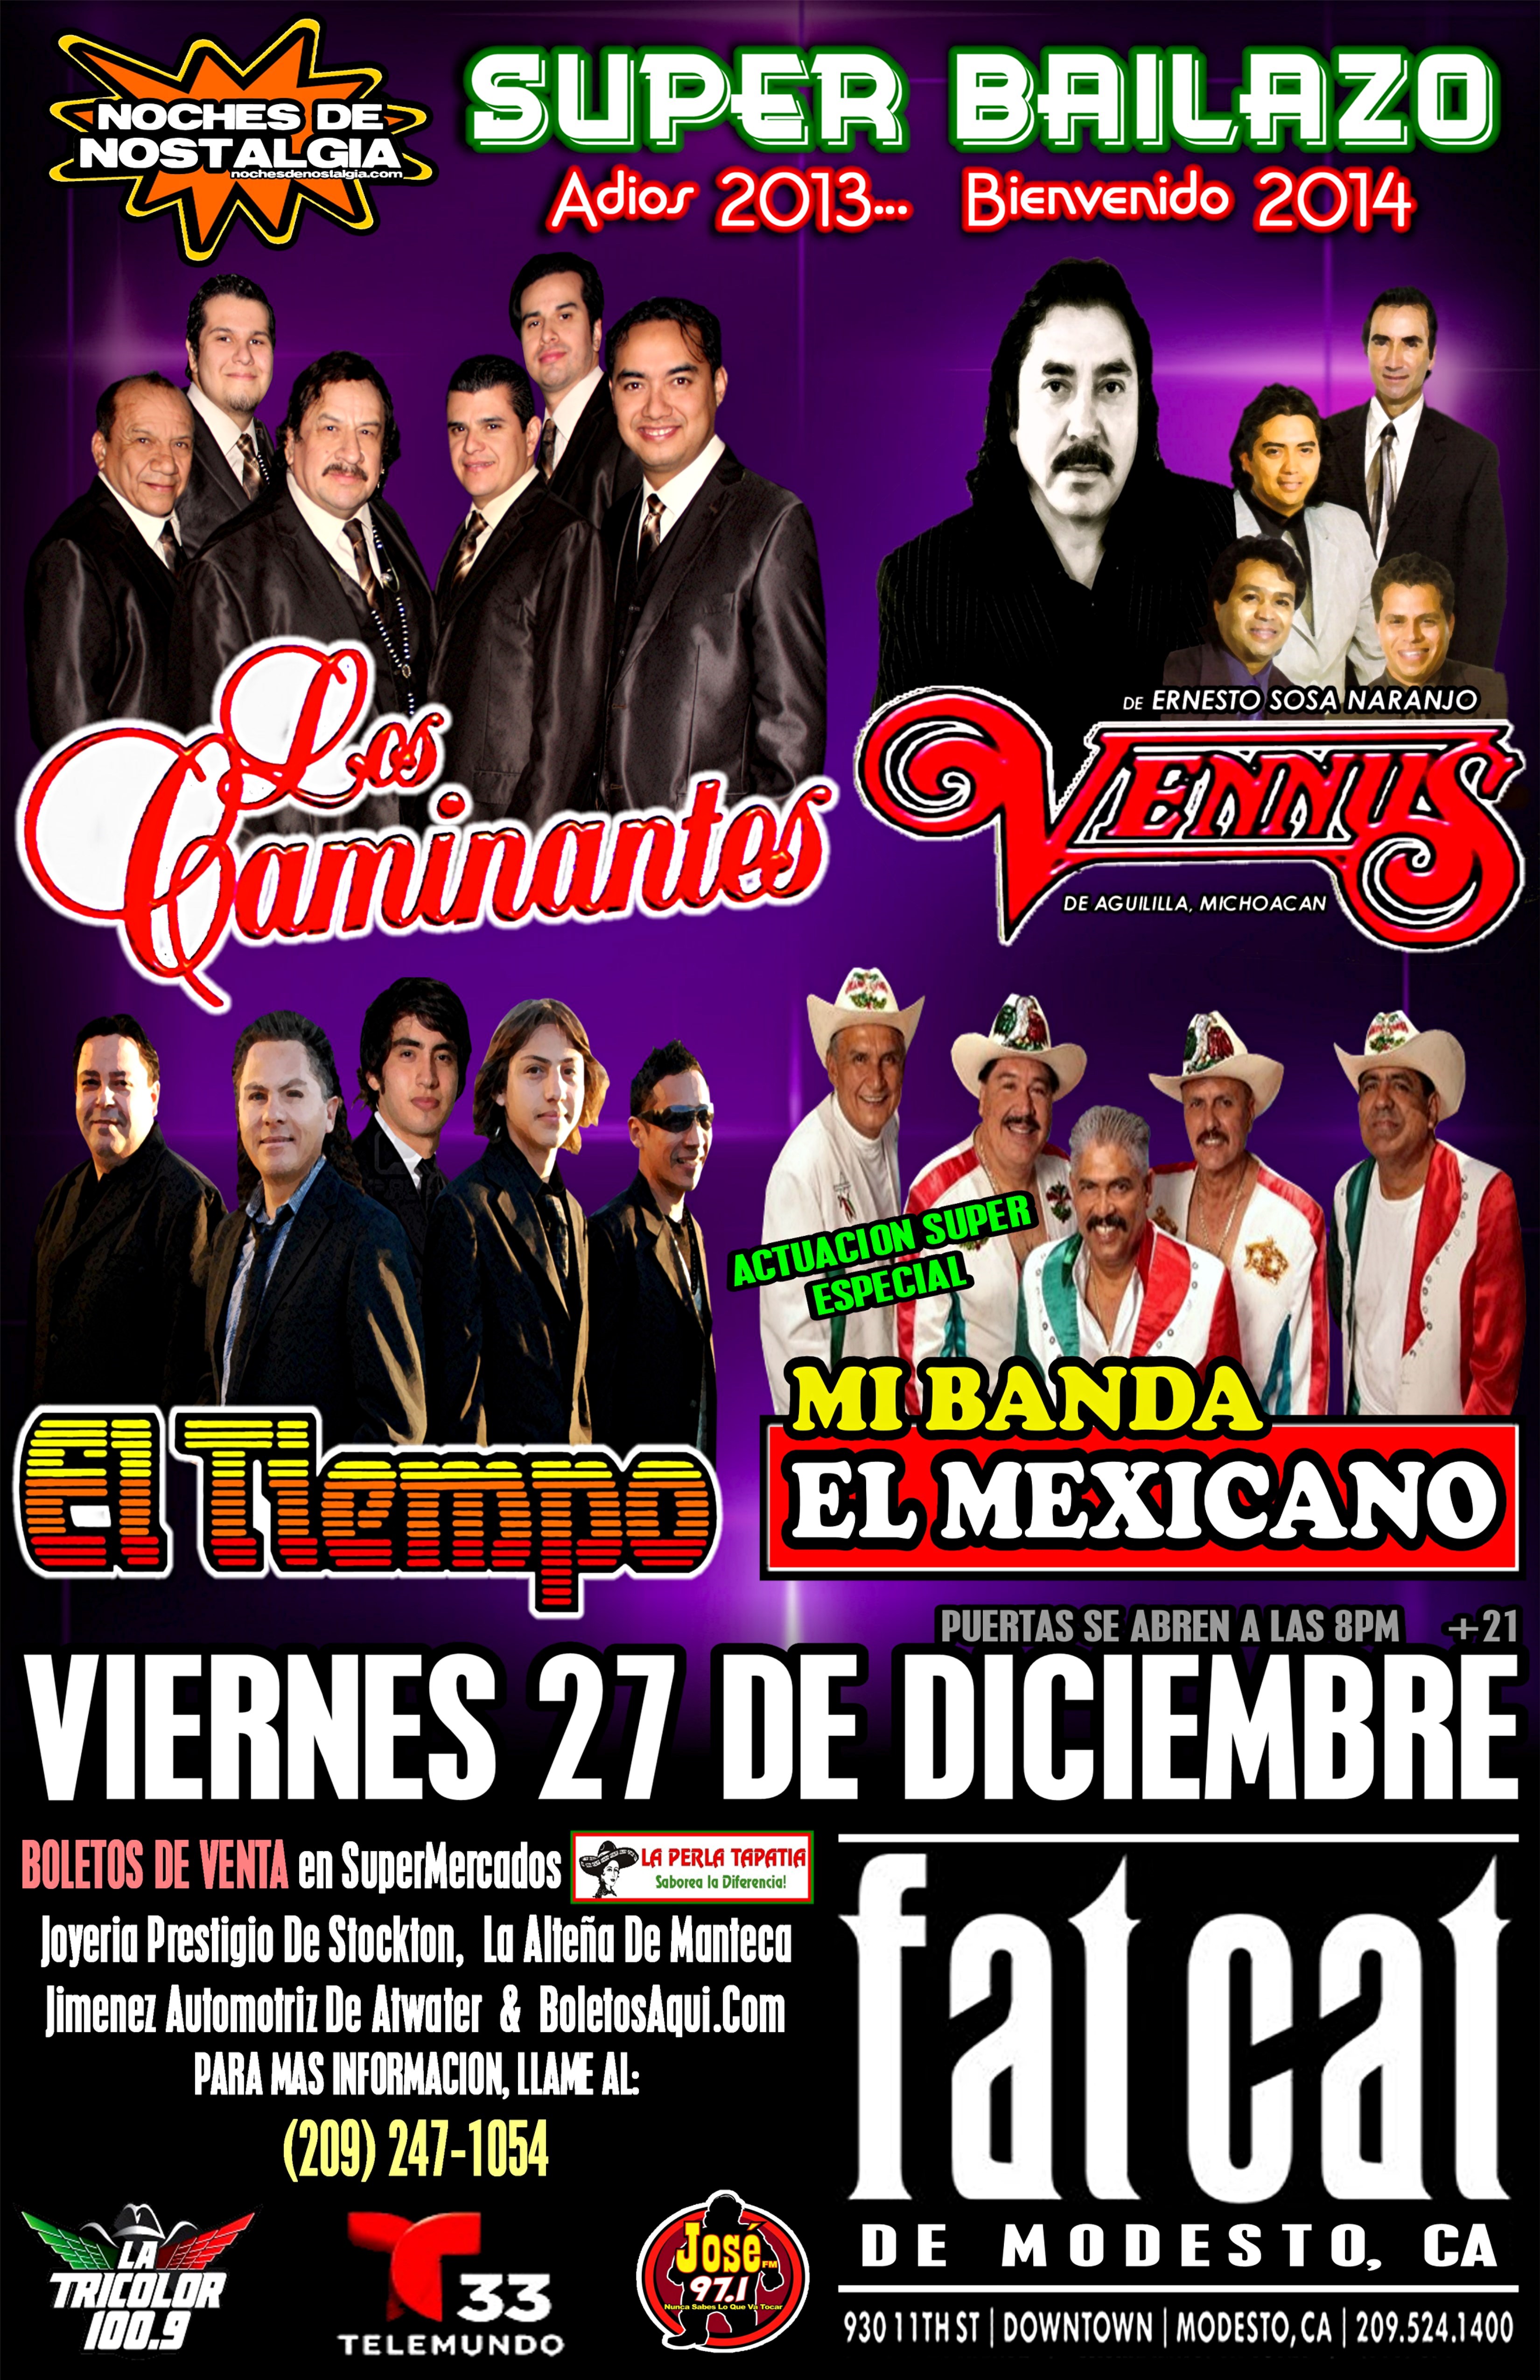 Buy Tickets to Los Caminantes in Modesto